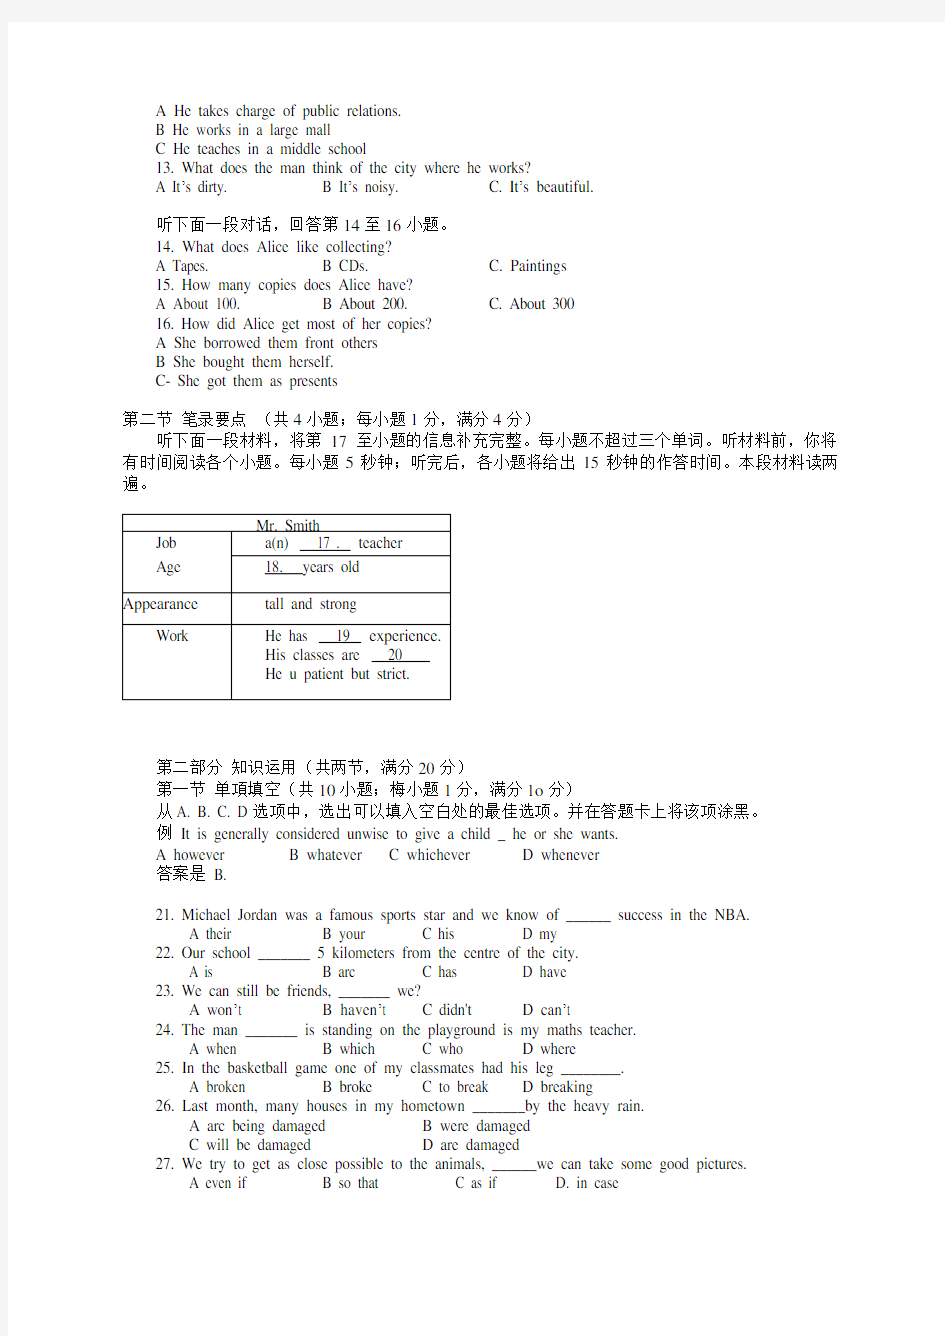 2013年湖南省普通高中学业水平考试英语试卷(真题)